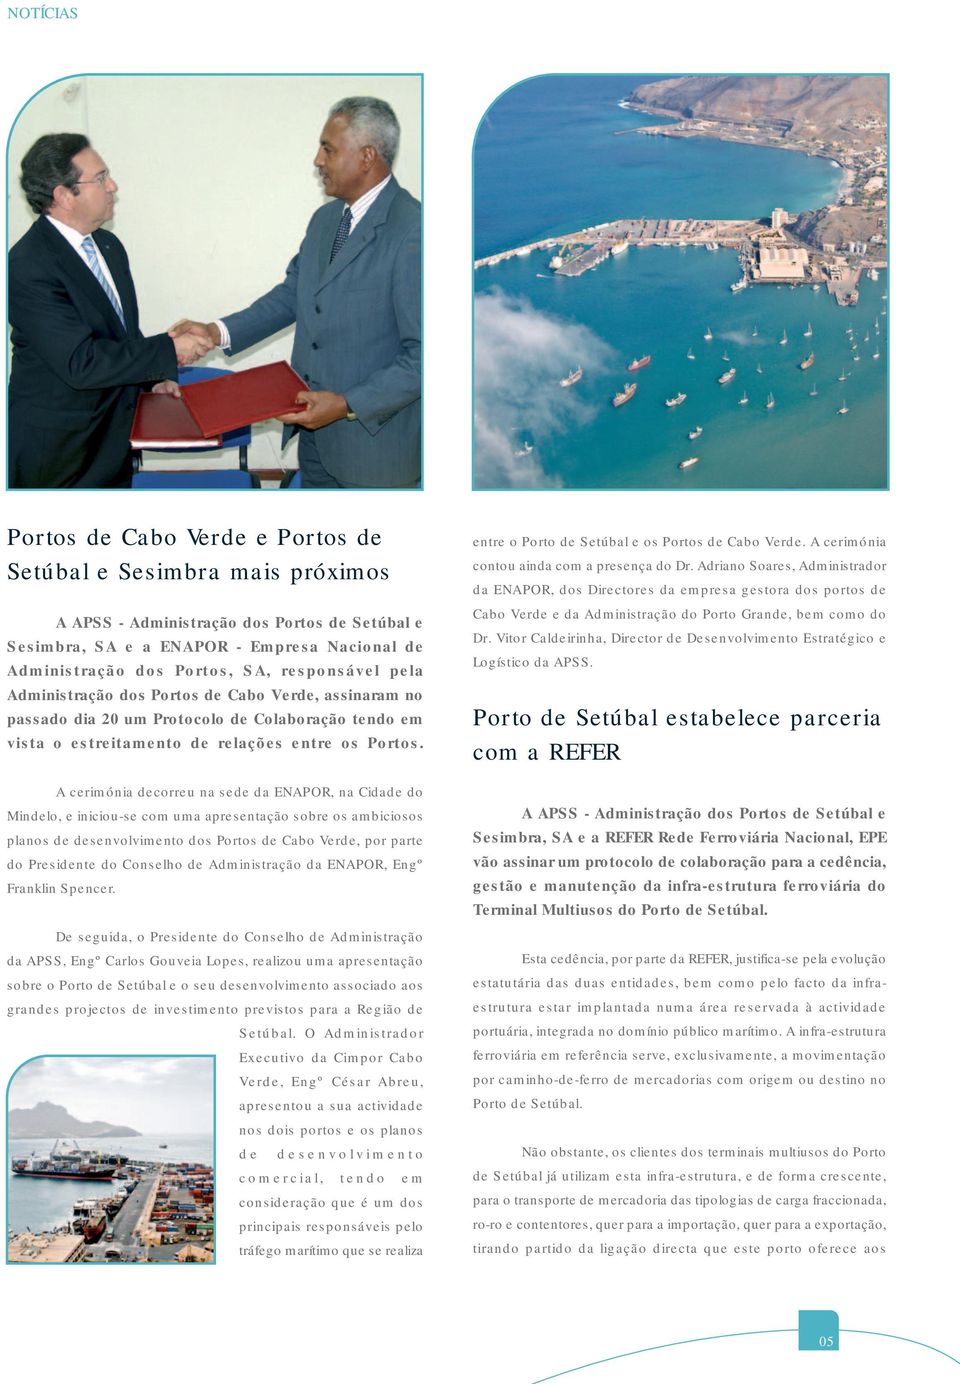 A cerimónia decorreu na sede da ENAPOR, na Cidade do Mindelo, e iniciou-se com uma apresentação sobre os ambiciosos planos de desenvolvimento dos Portos de Cabo Verde, por parte do Presidente do